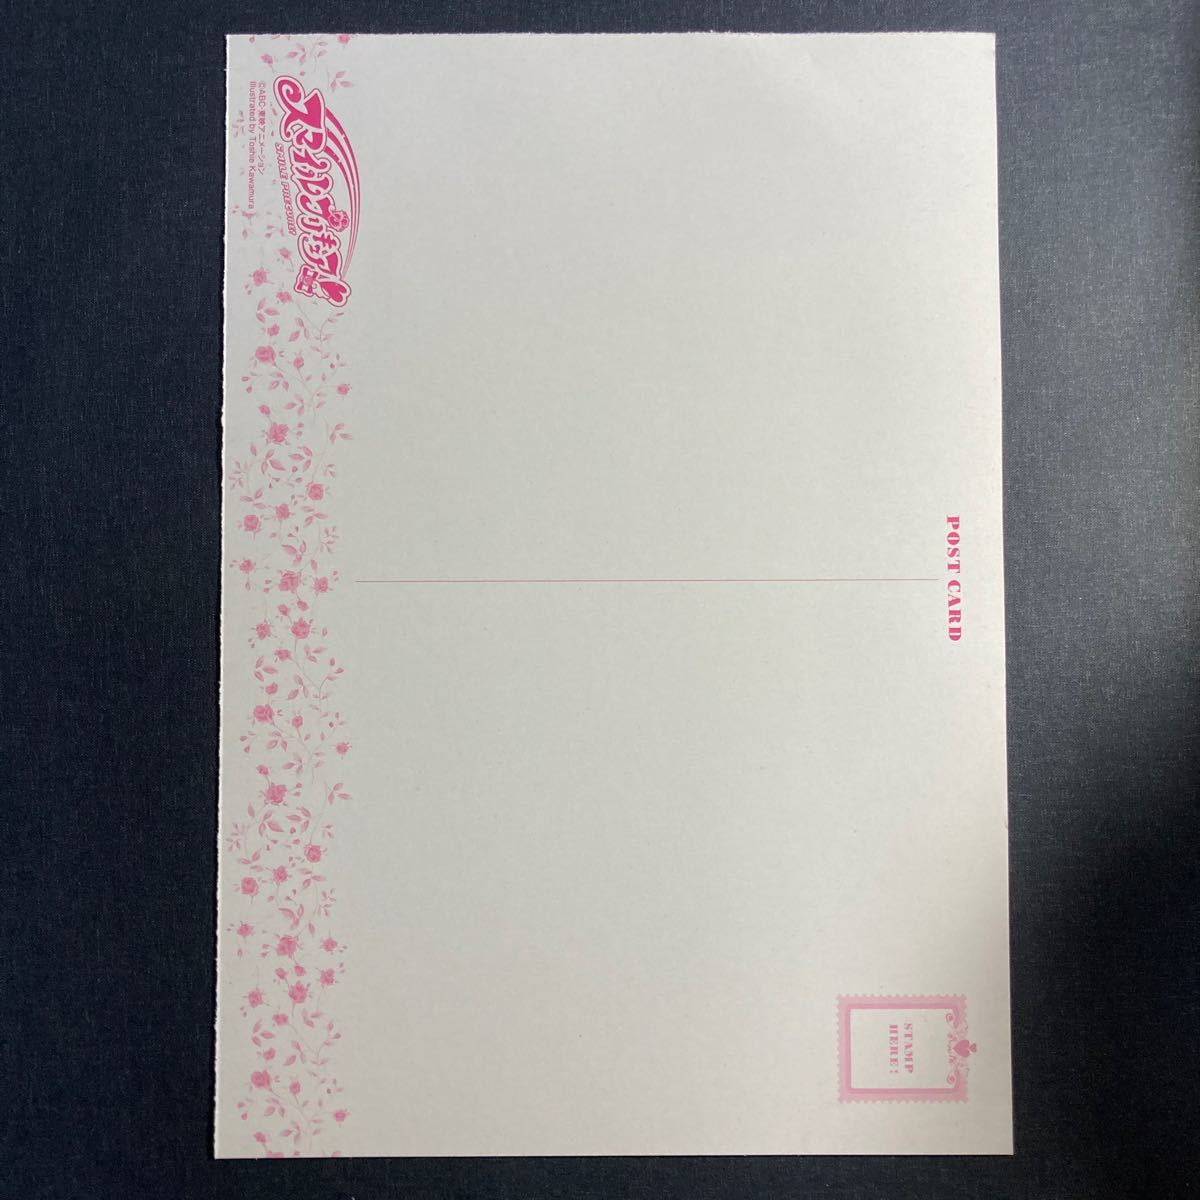 Z001】スマイルプリキュア ポストカード (東映アニメーション)_画像2